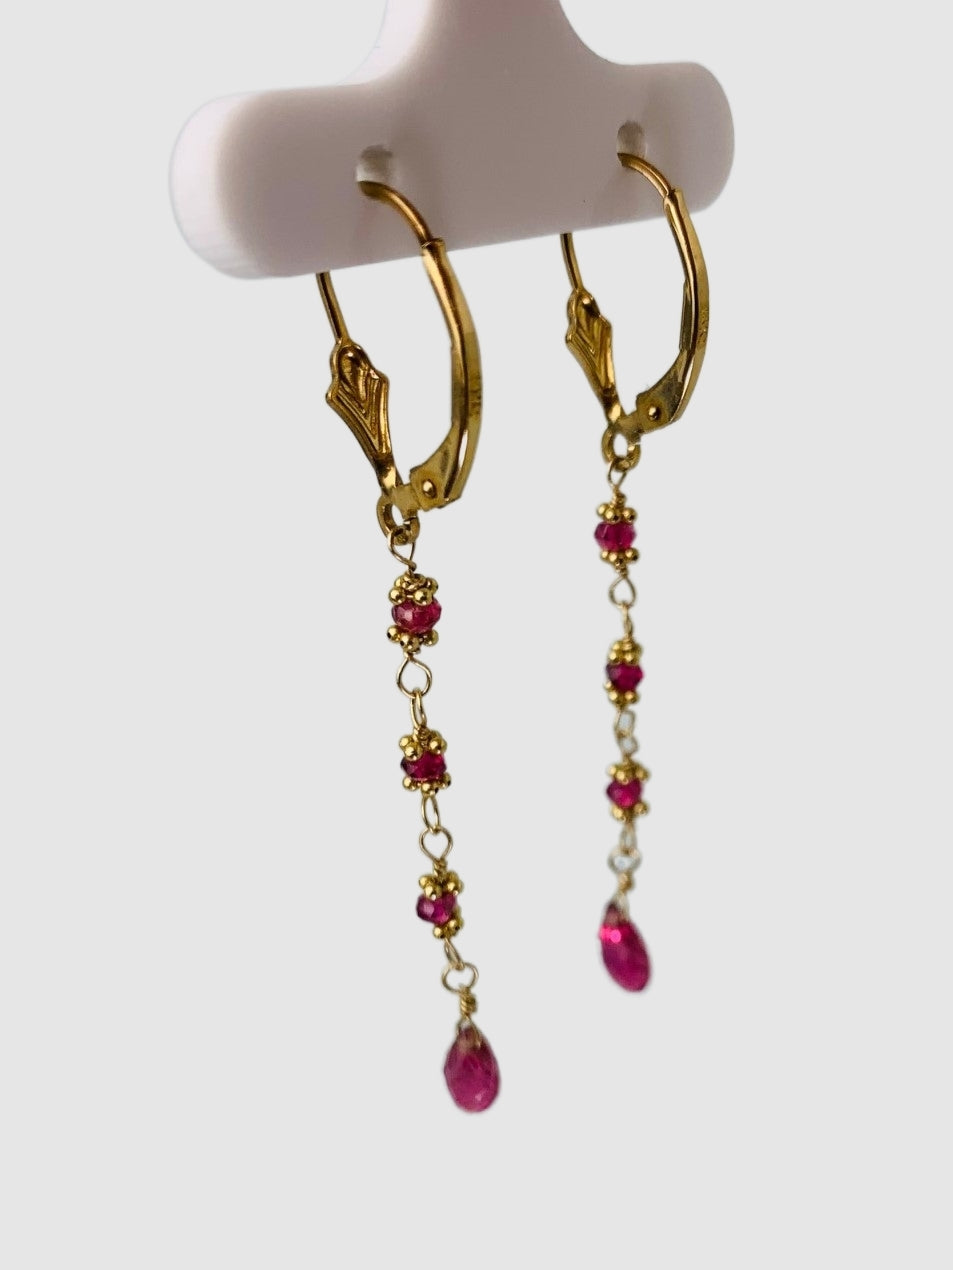 Pink Tourmaline 4 Stone Rosary Drop Earrings in 14KY - EAR-167-ROSDRPGM14Y-PT